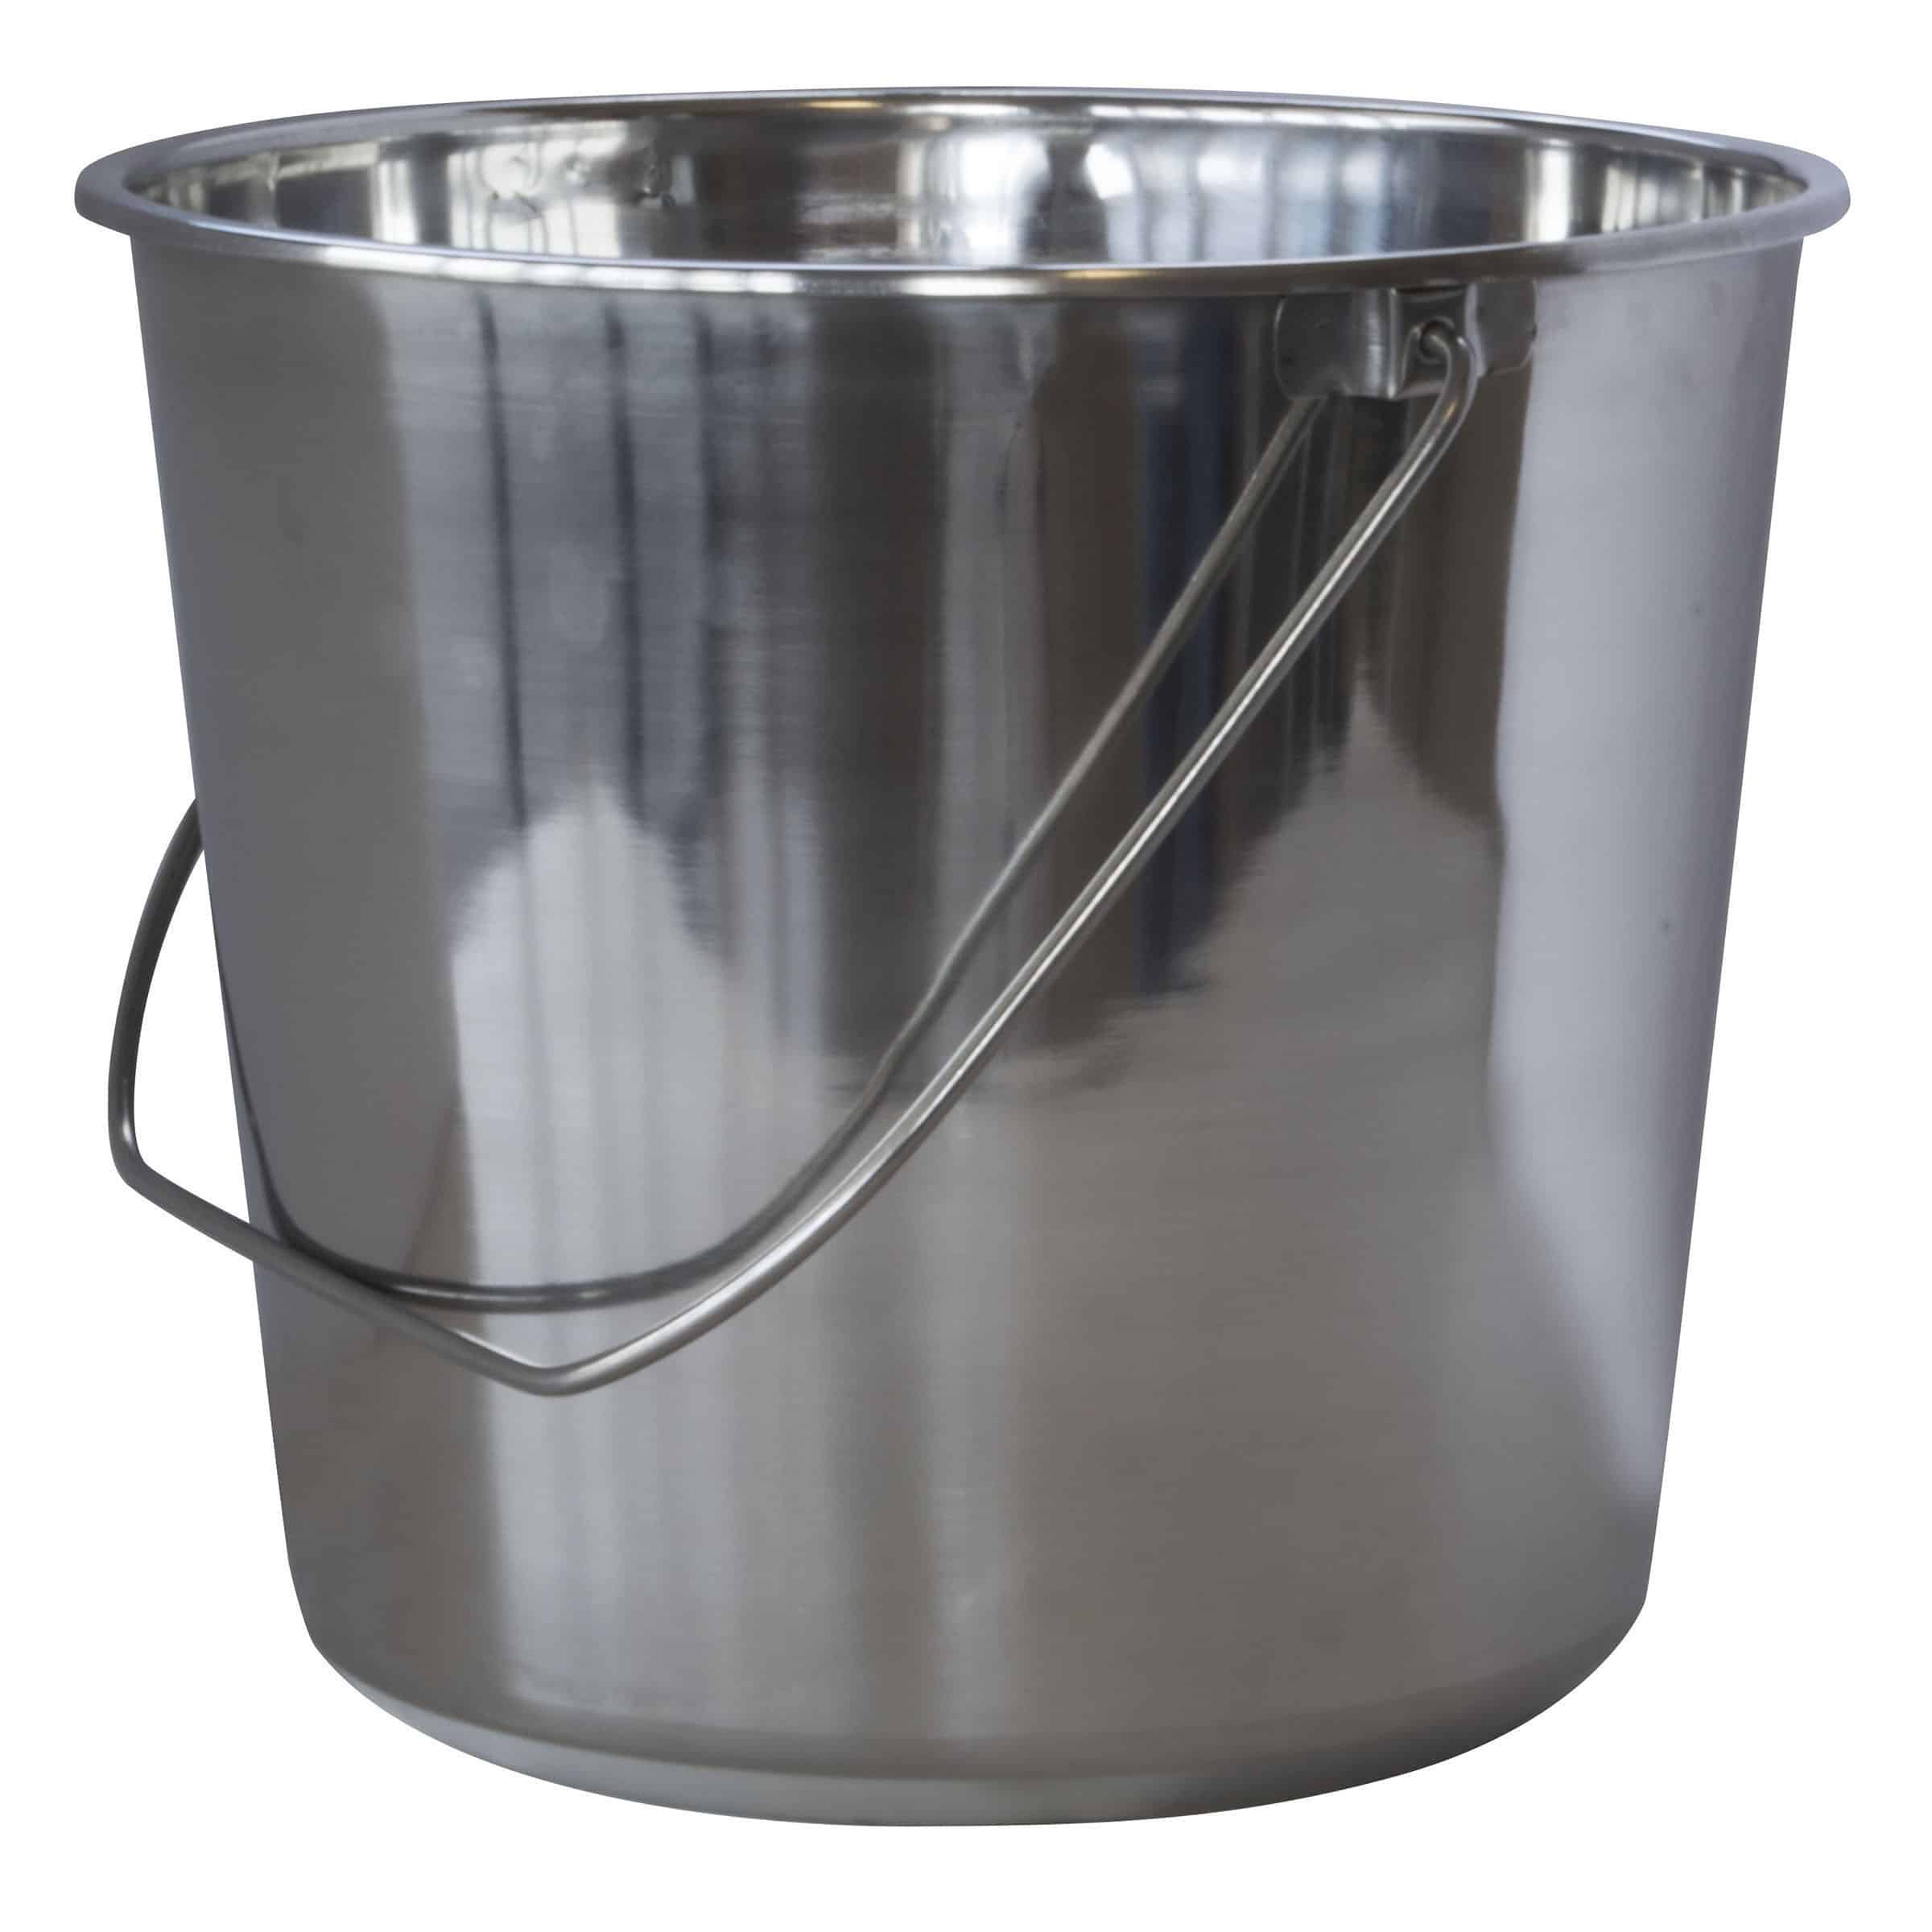 Stainless Steel Bucket 5.28 Gallon